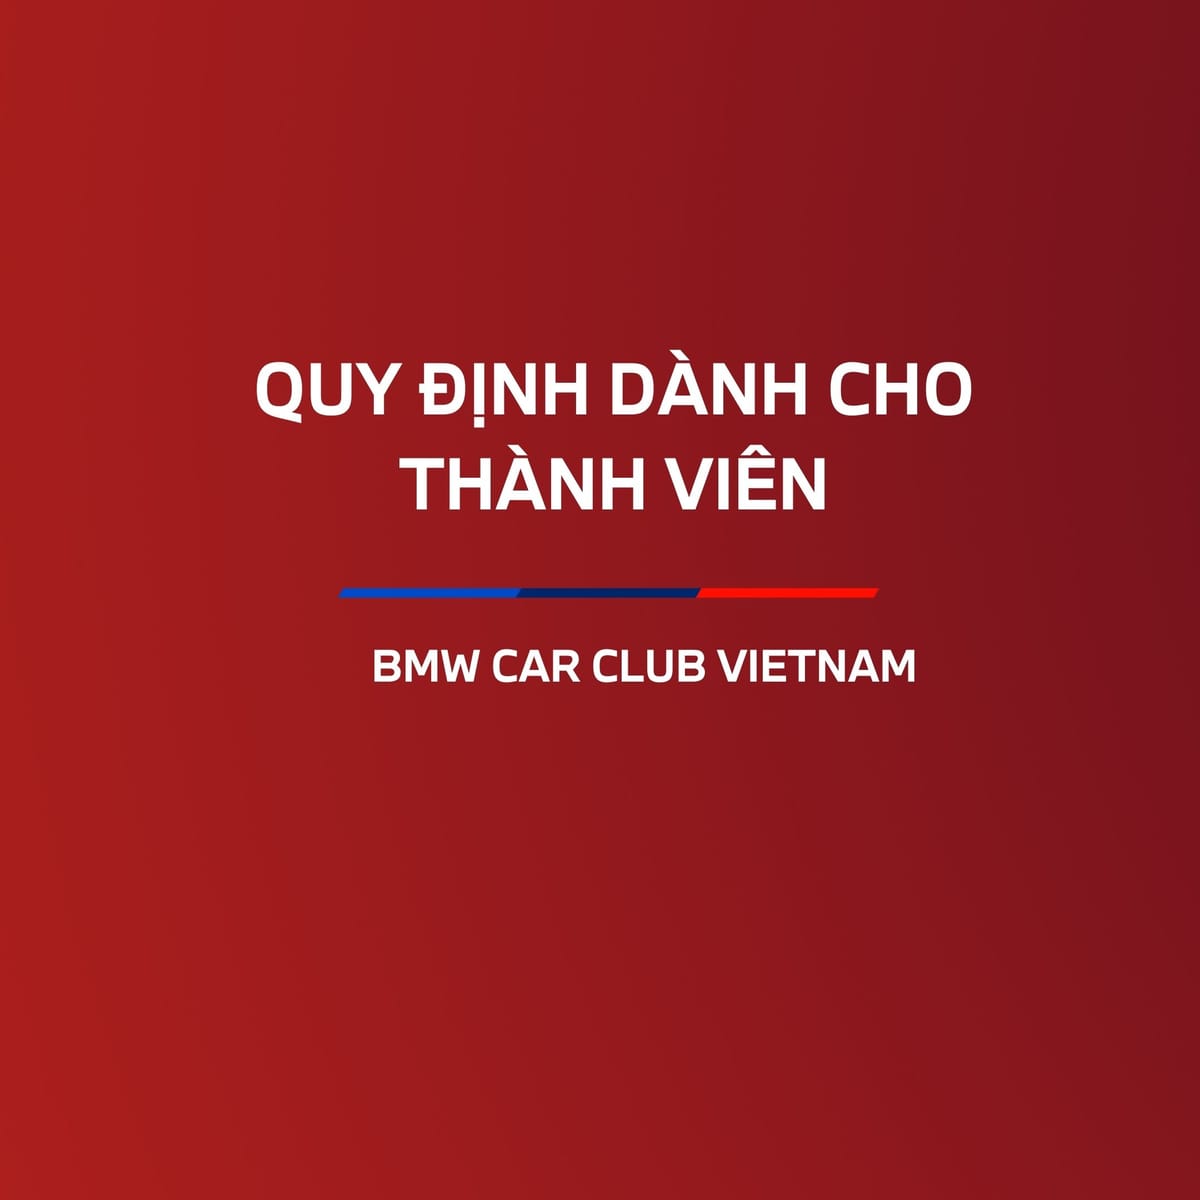 Quy định dành cho thành viên BMW Car Club Vietnam